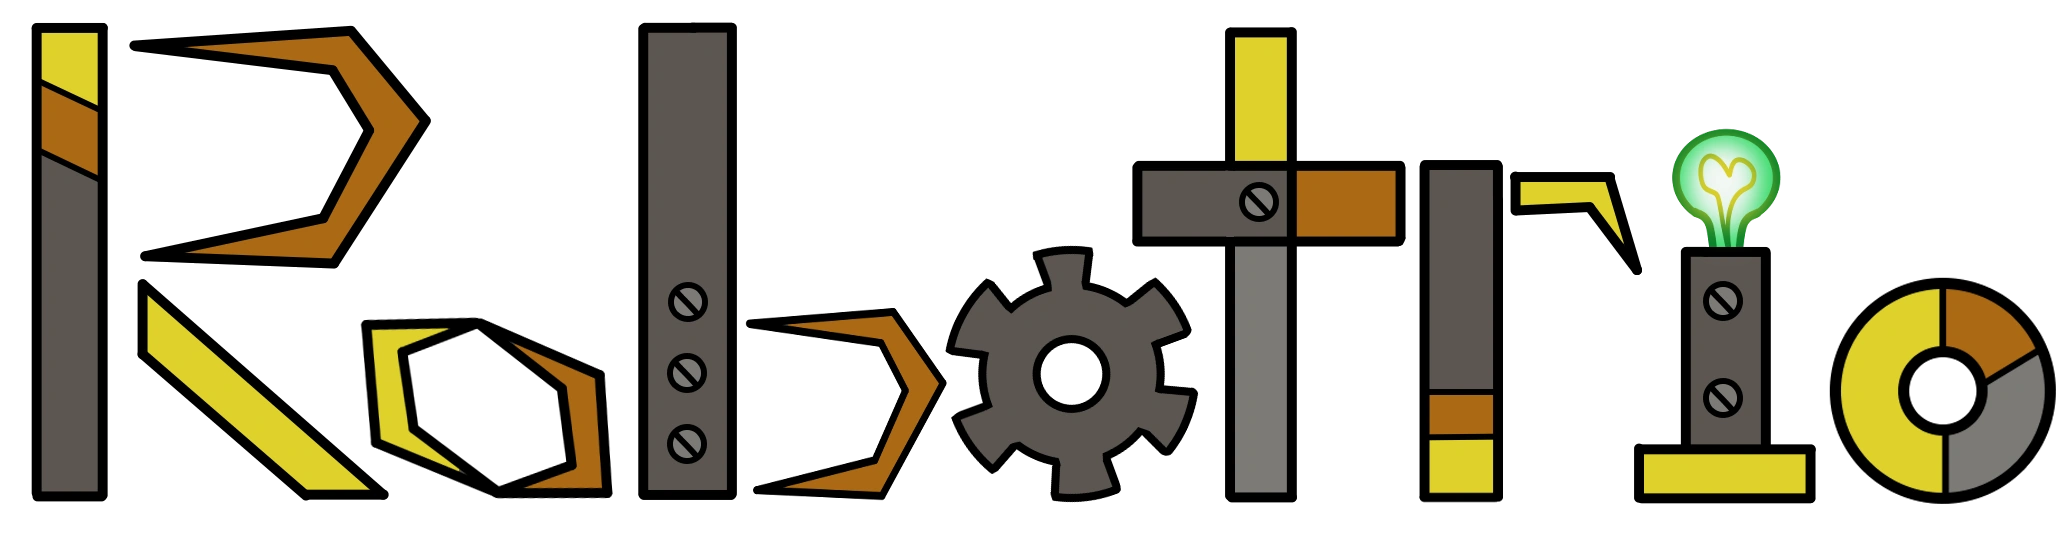 Robotrio logo